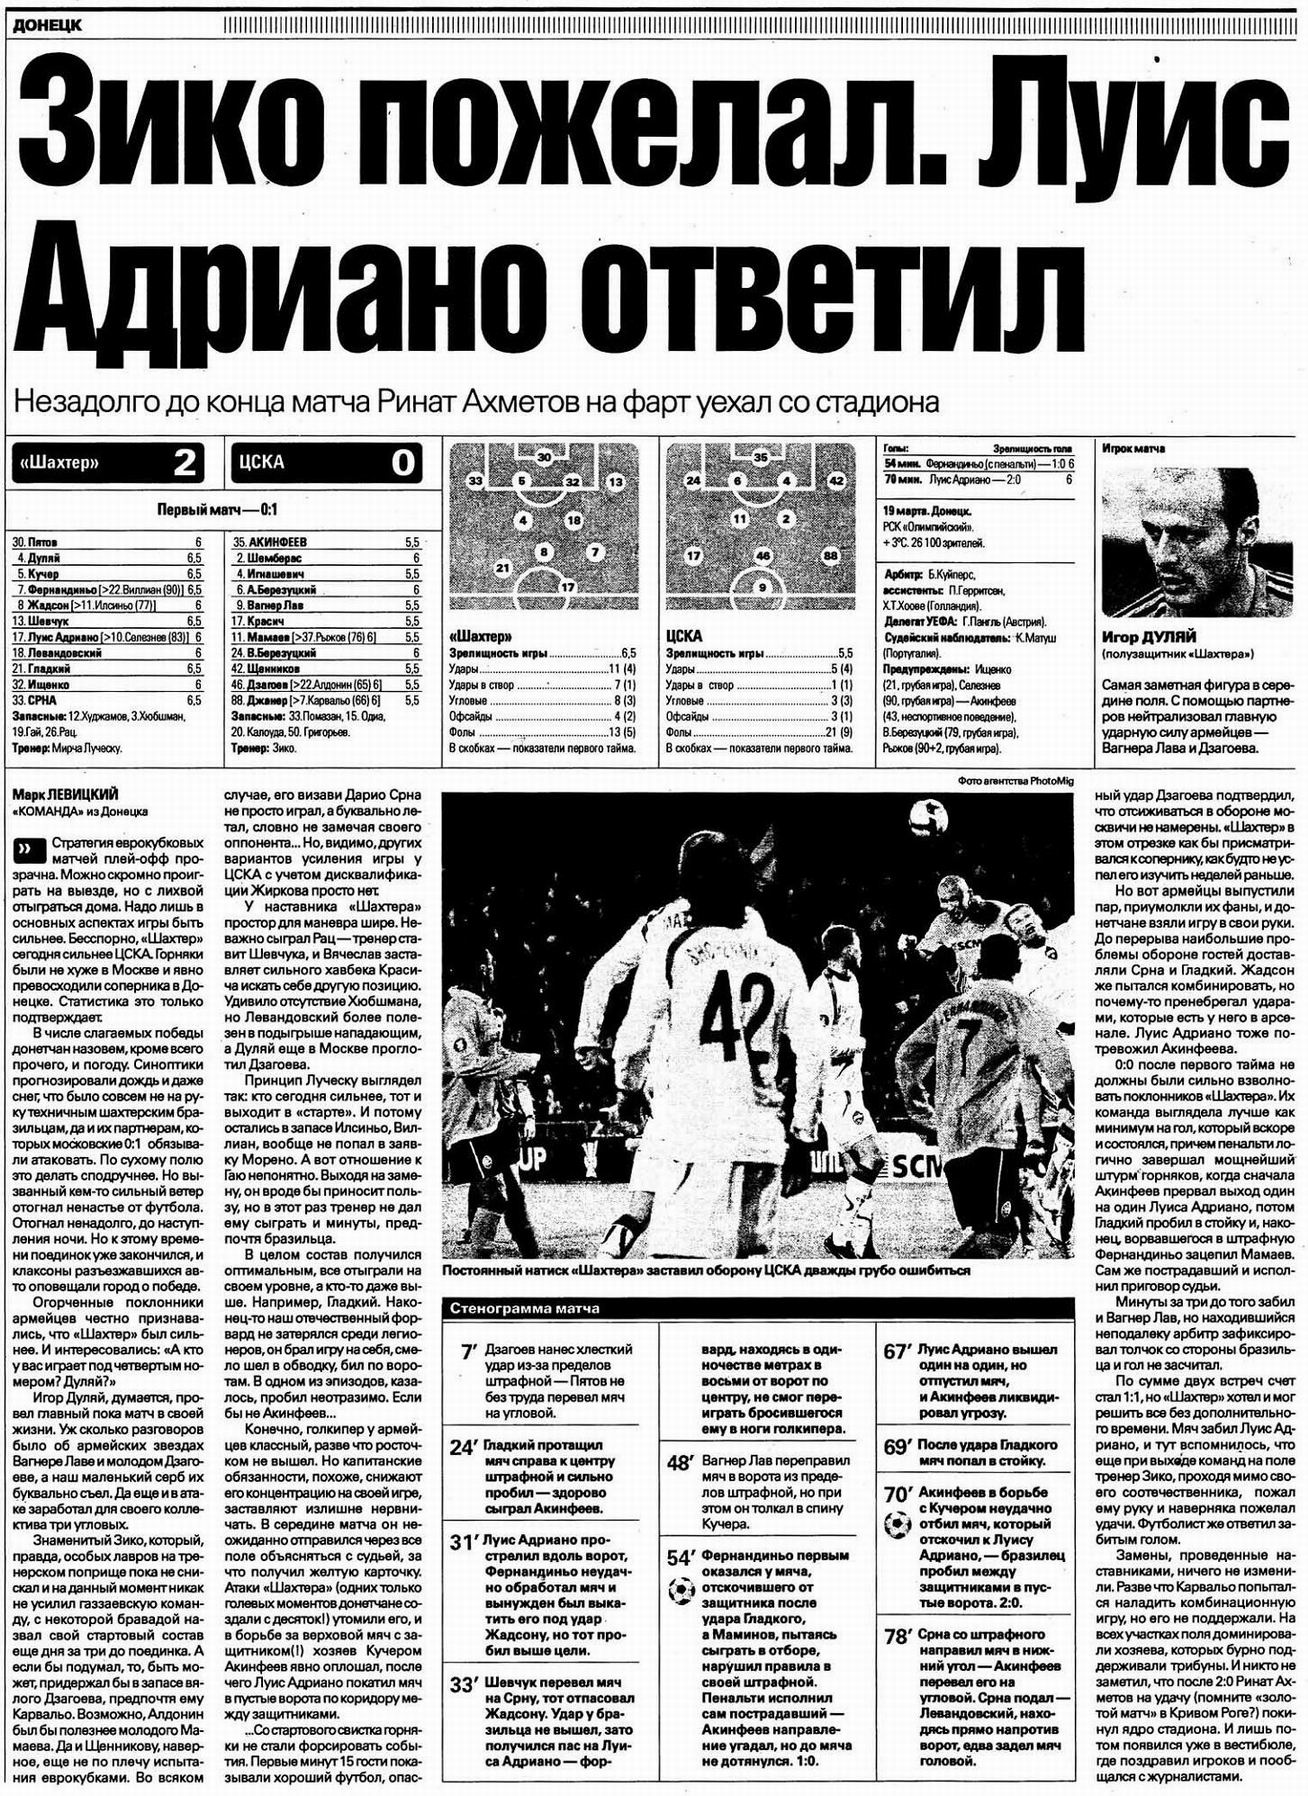 2009-03-19.Shakhter-CSKA.3